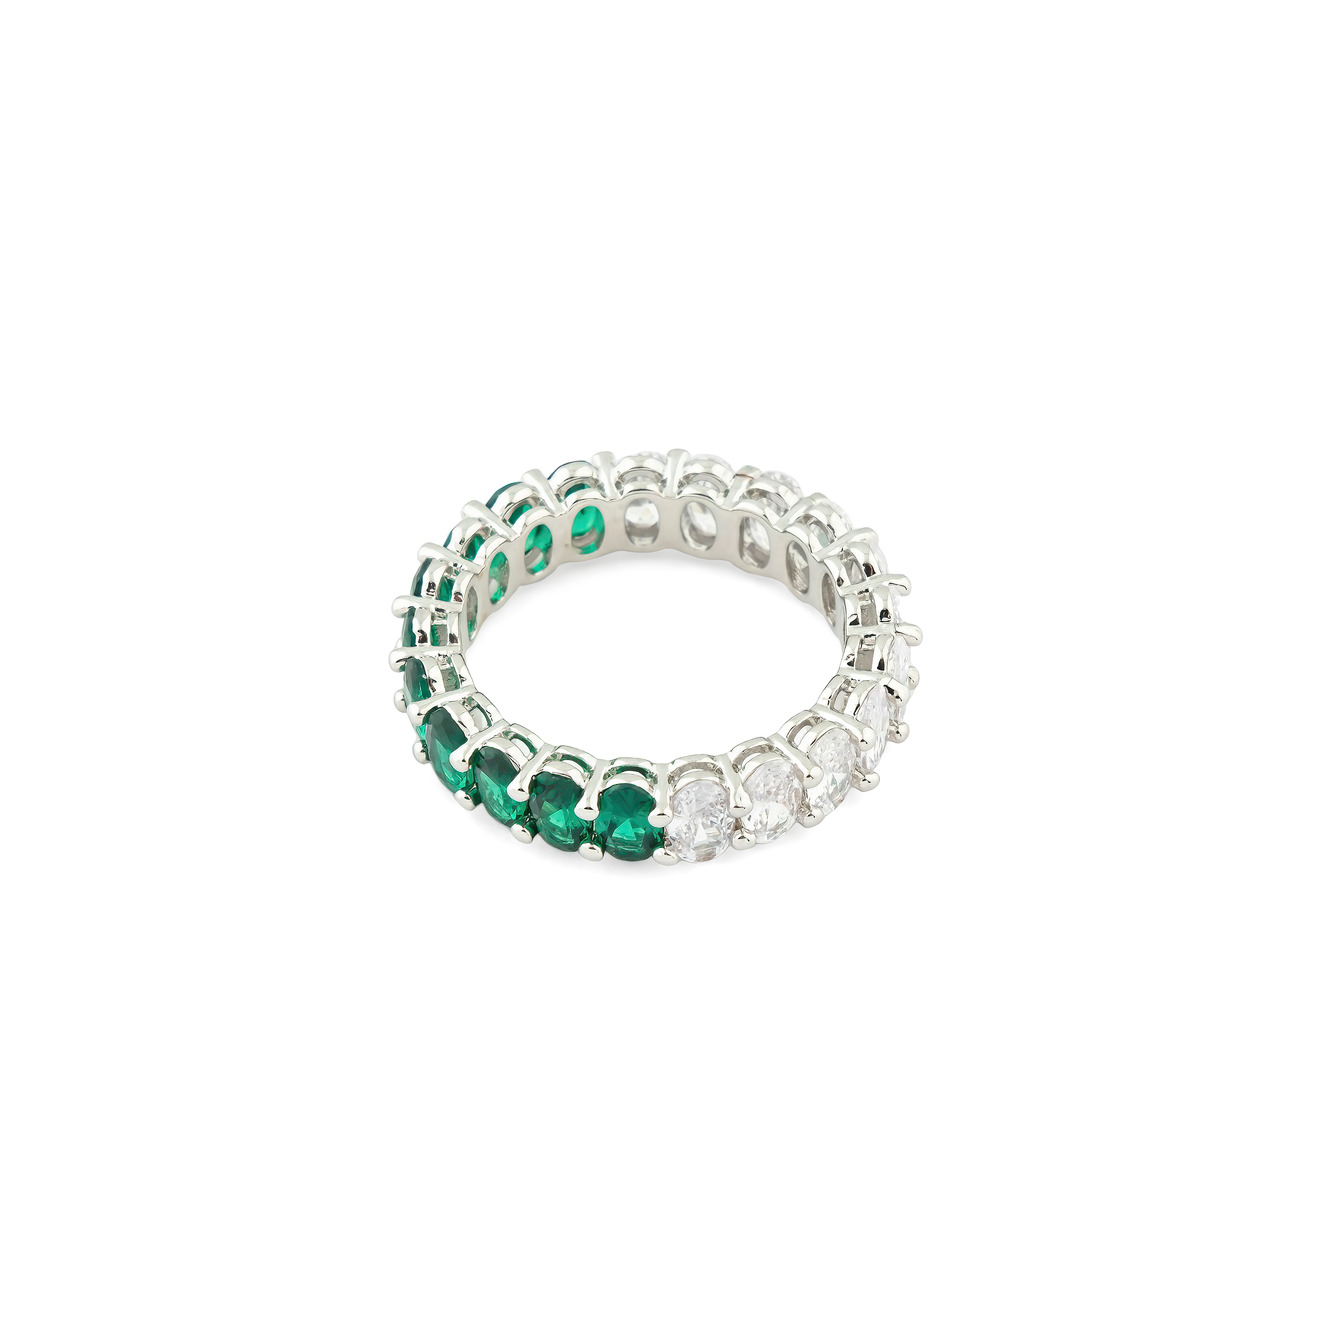 Herald Percy Серебристое кольцо с овалами белых и зеленых кристаллов herald percy золотистое кольцо с паве из черных и белых кристаллов